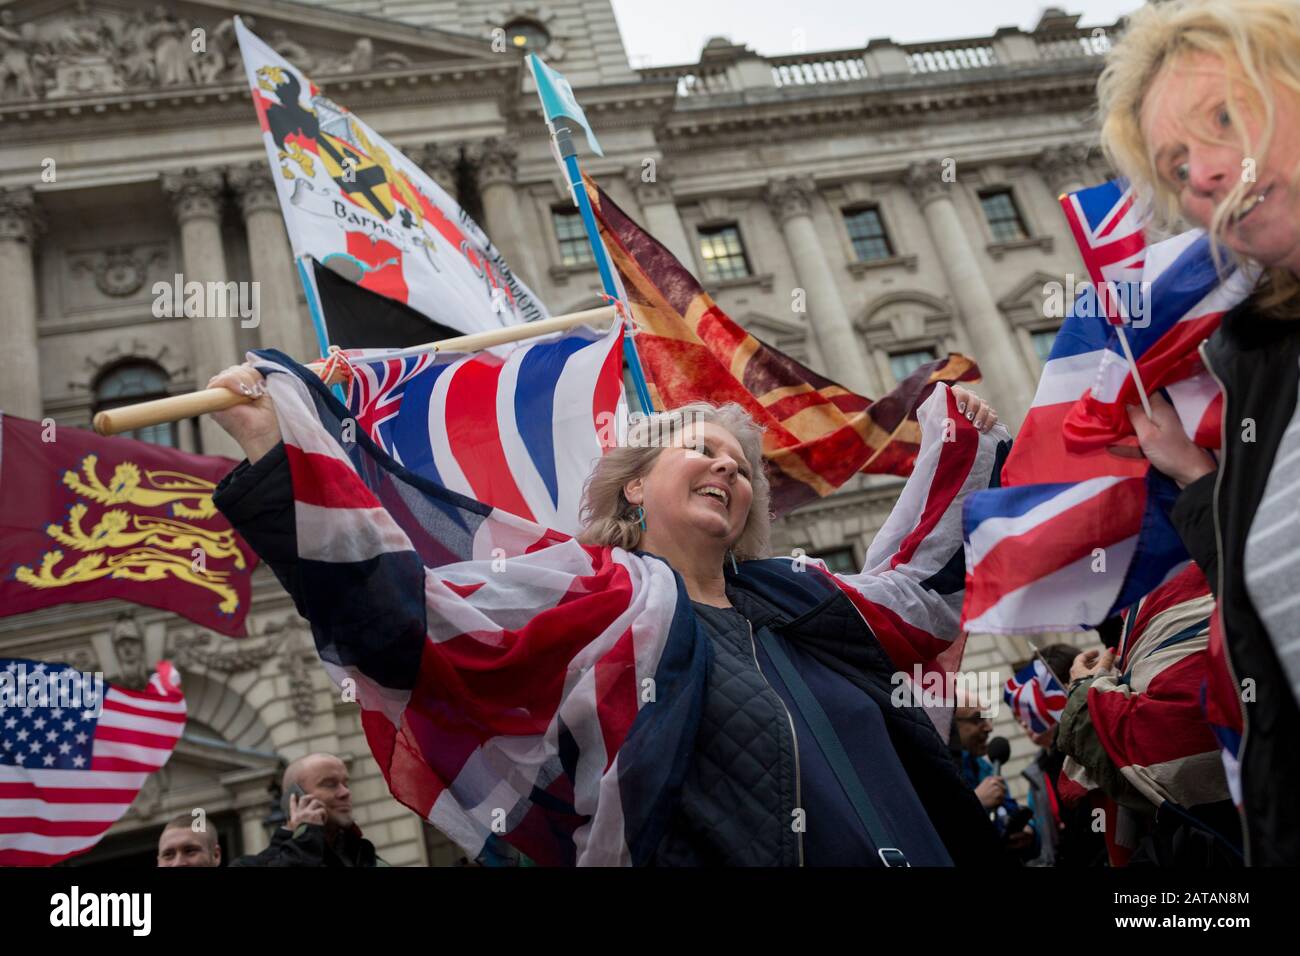 Dopo tre anni e mezzo di sconvolgimenti politici al parlamento britannico, i sostenitori della Brexit celebrano a Westminster il giorno della Brexit, il giorno in cui il Regno Unito lascia legalmente l’Unione europea, il 31st gennaio 2020, a Londra, in Inghilterra. Foto Stock